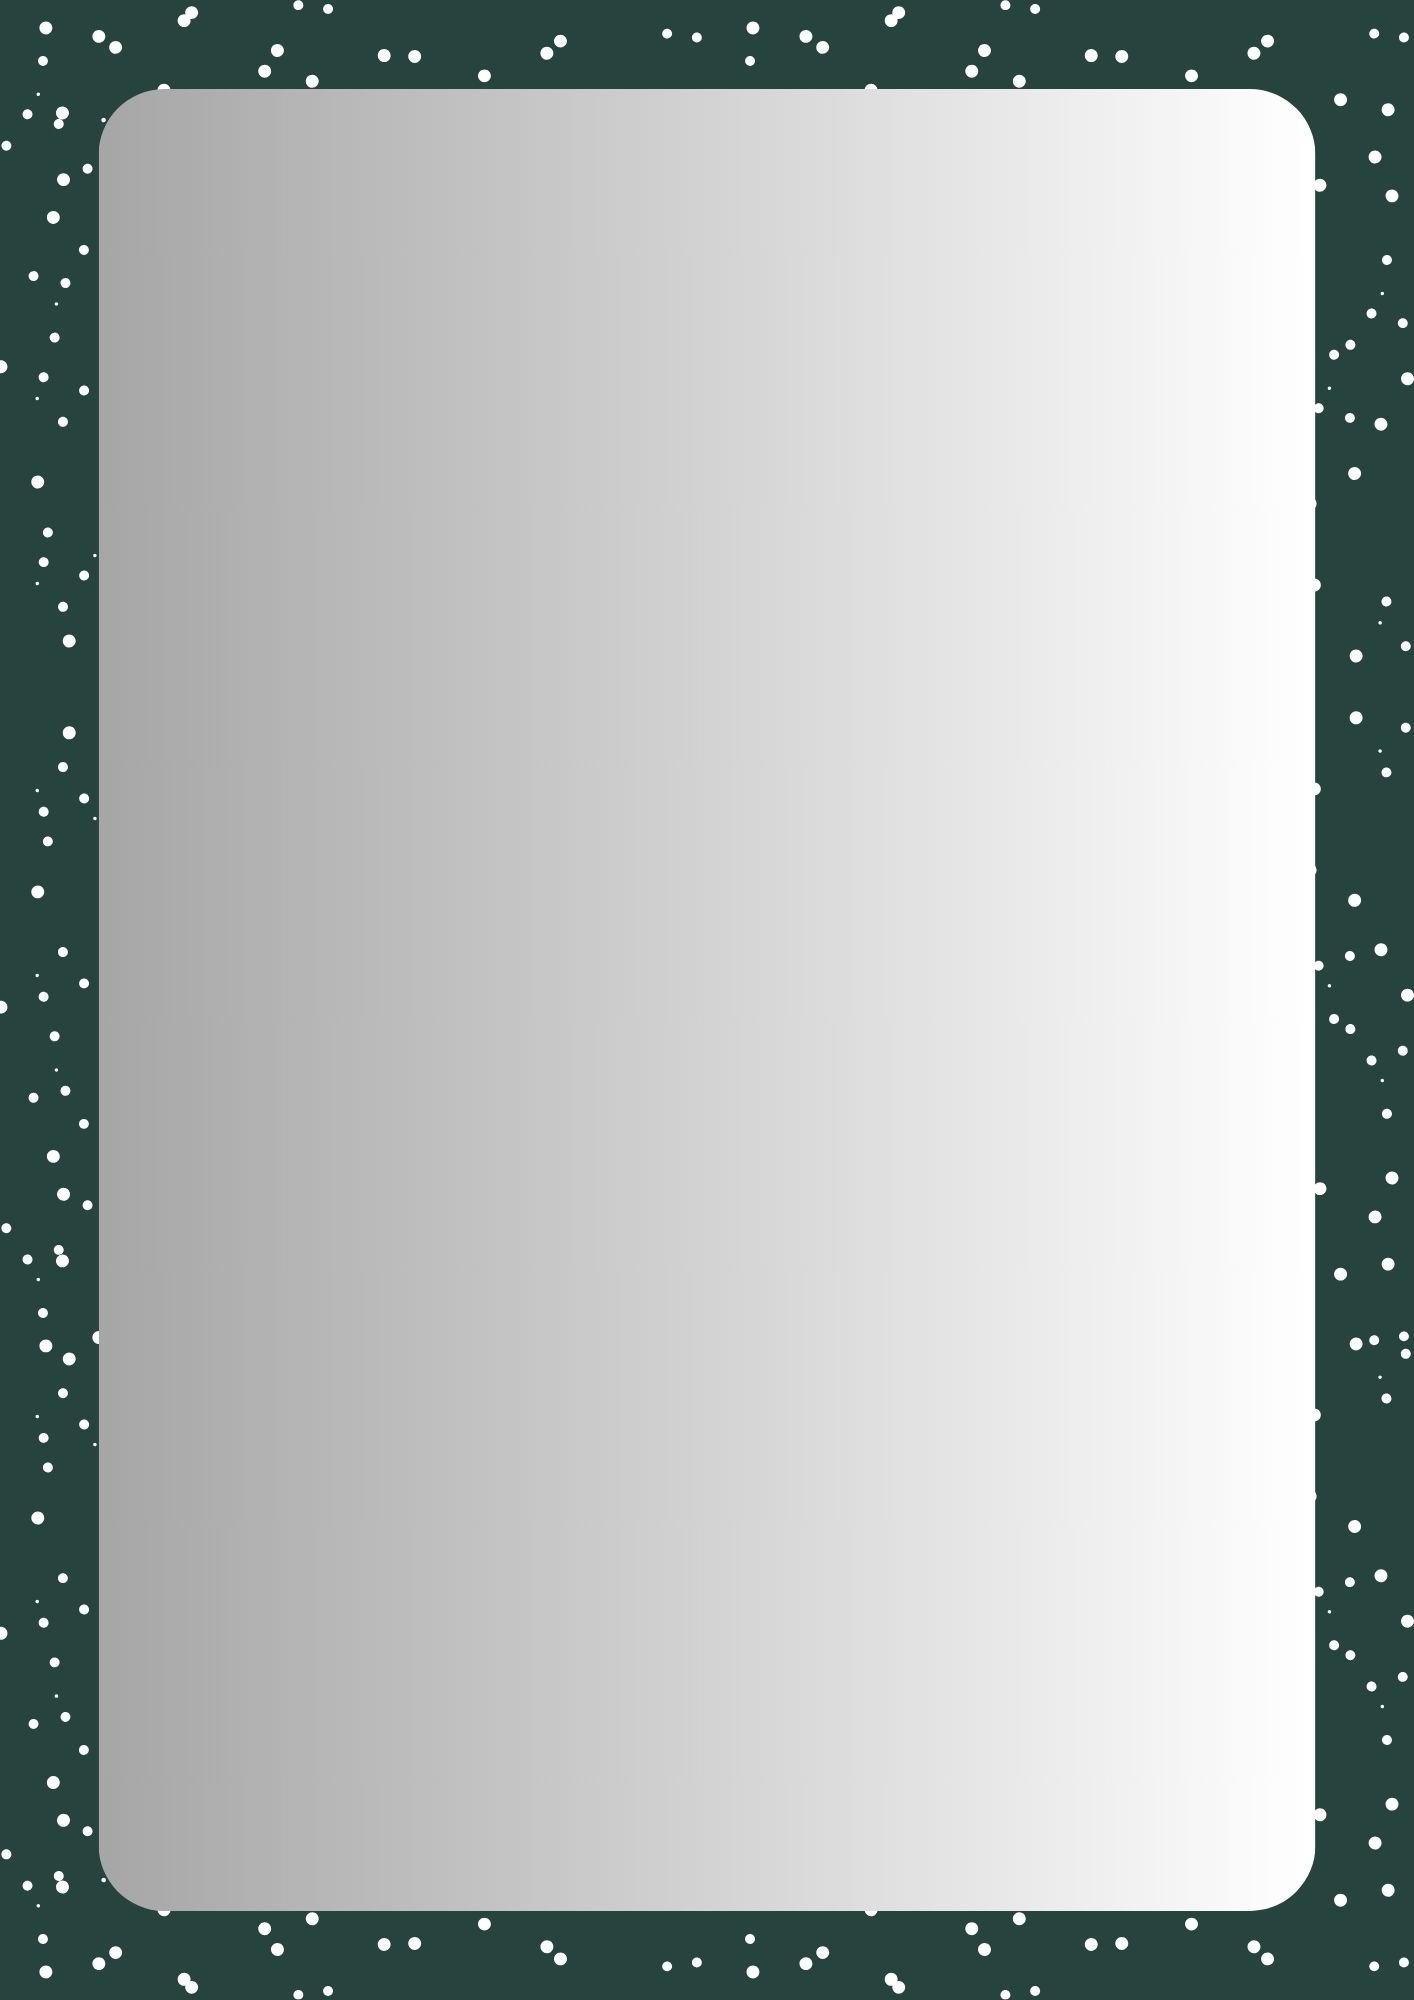 Christmas-border_16